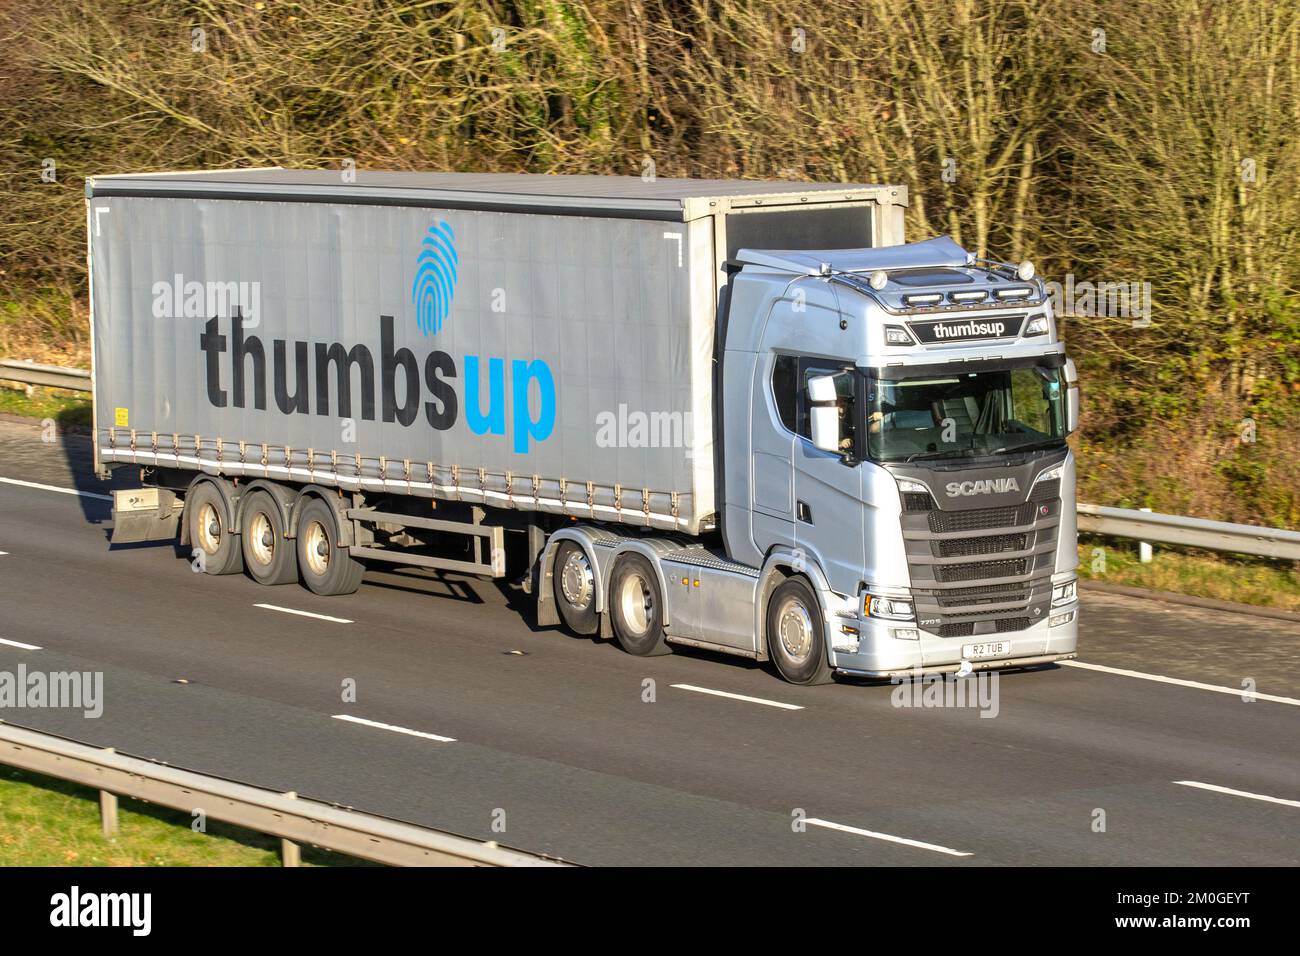 THUMB UP (BURY) LTD une société de transport et de transport située à BURY 'Thumb up'; SCANIA 770S Gray s660 A 6X2 1635cc Diesel Cutasider Banque D'Images